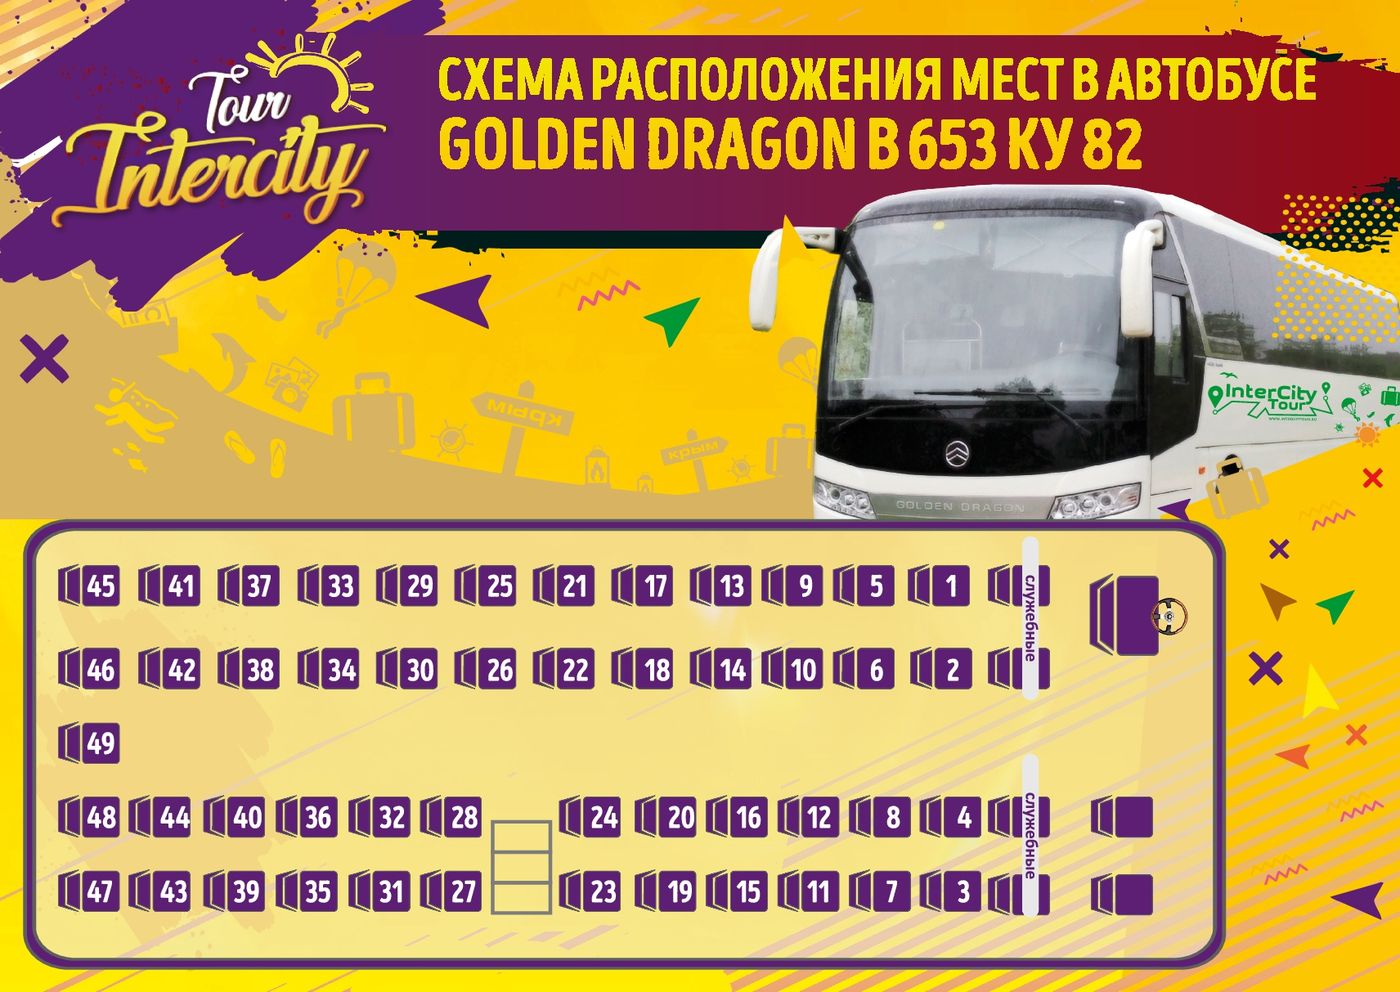 Междугородные автобусы саларьево. Автобус Golden Dragon 39 мест. Расположение мест в автобусе. Места в автобусе схема. Расположение мест в междугороднем автобусе схема.